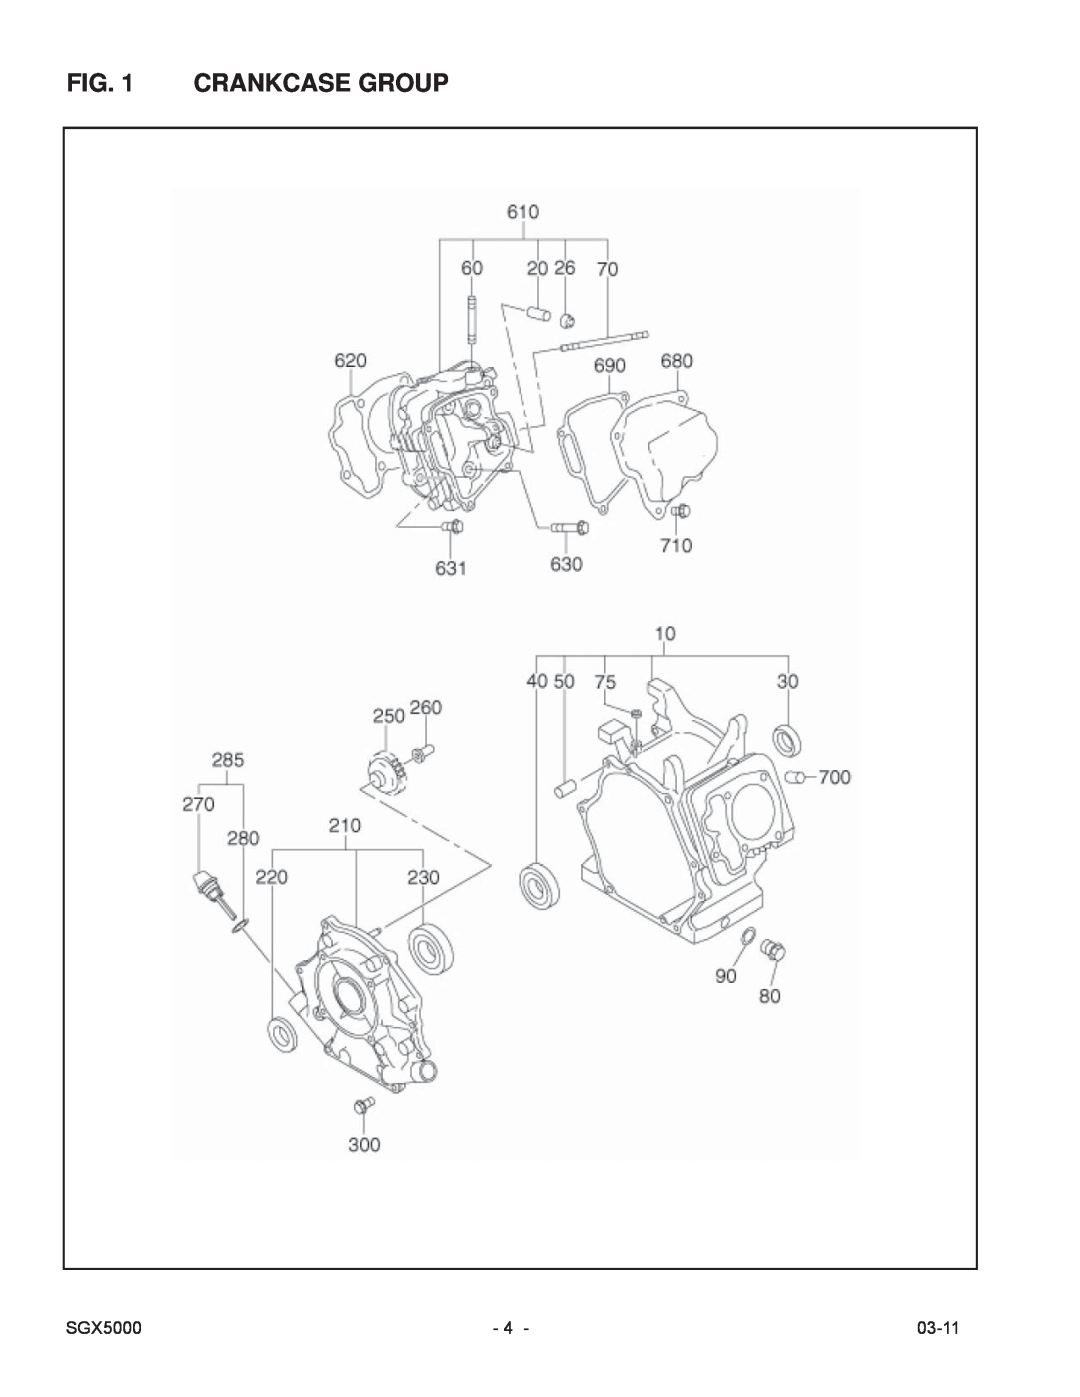 Subaru SGX5000 manual Crankcase Group, 03-11 